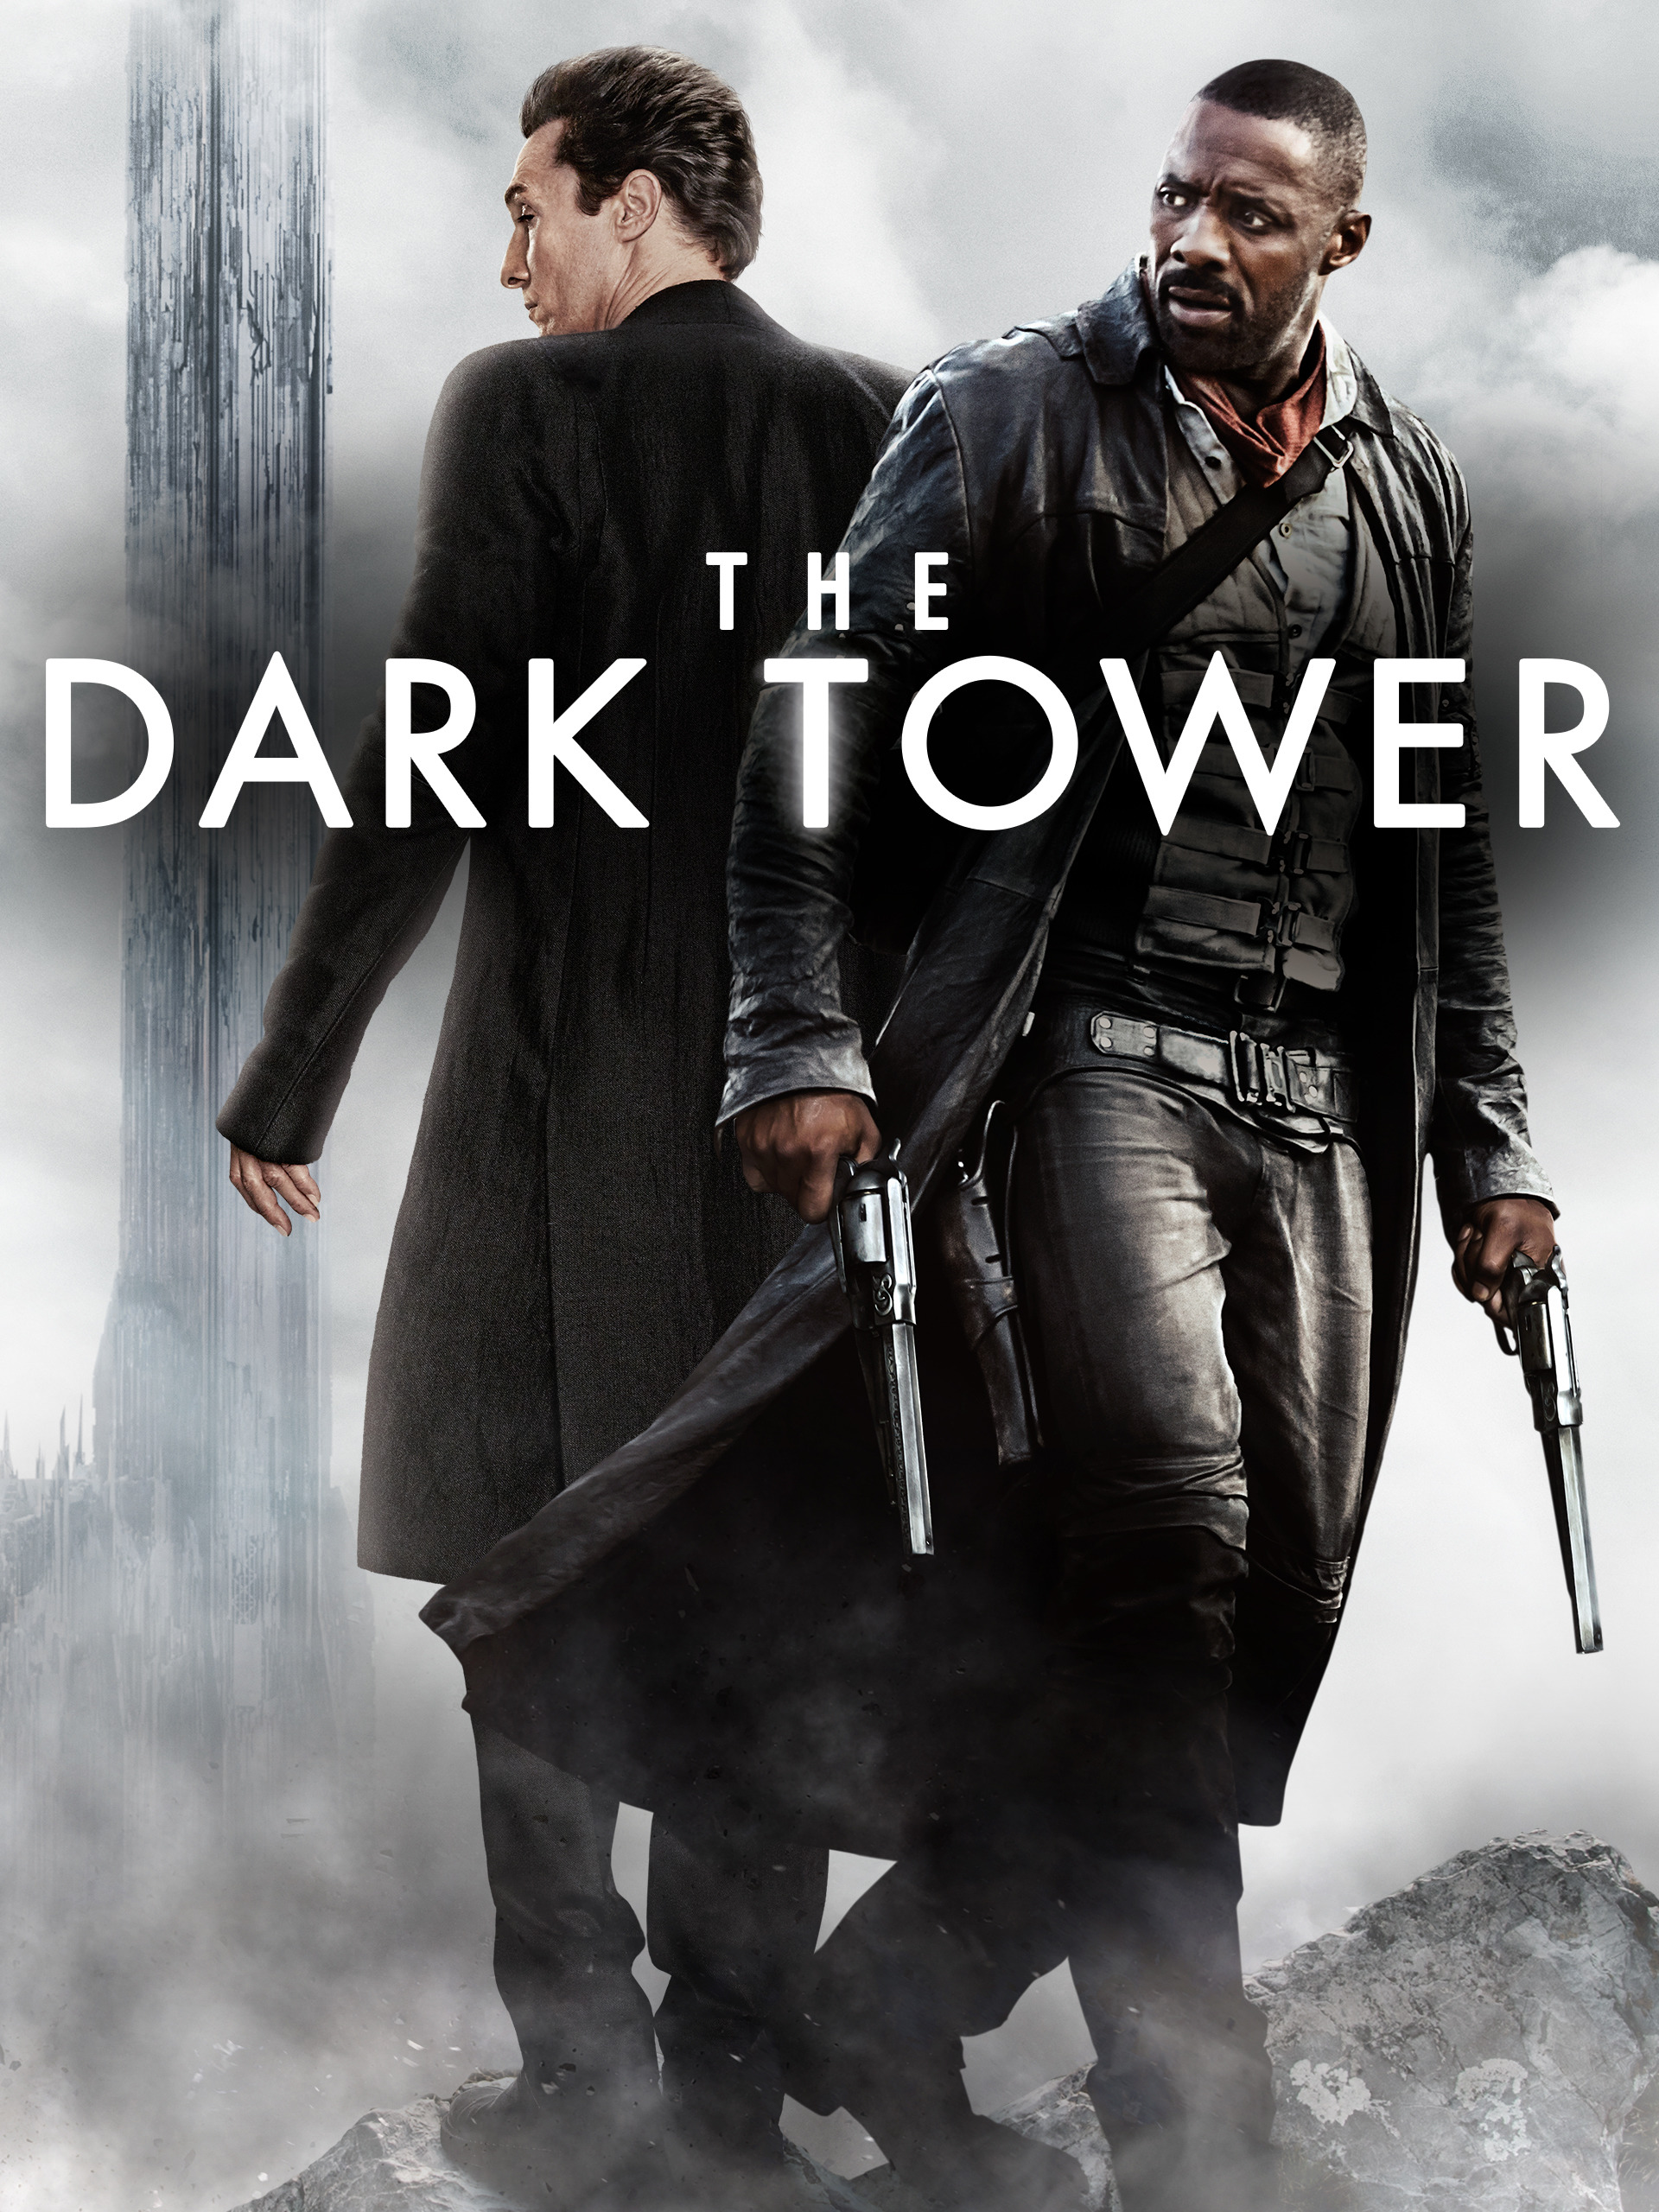 THE DARK TOWER (2017)